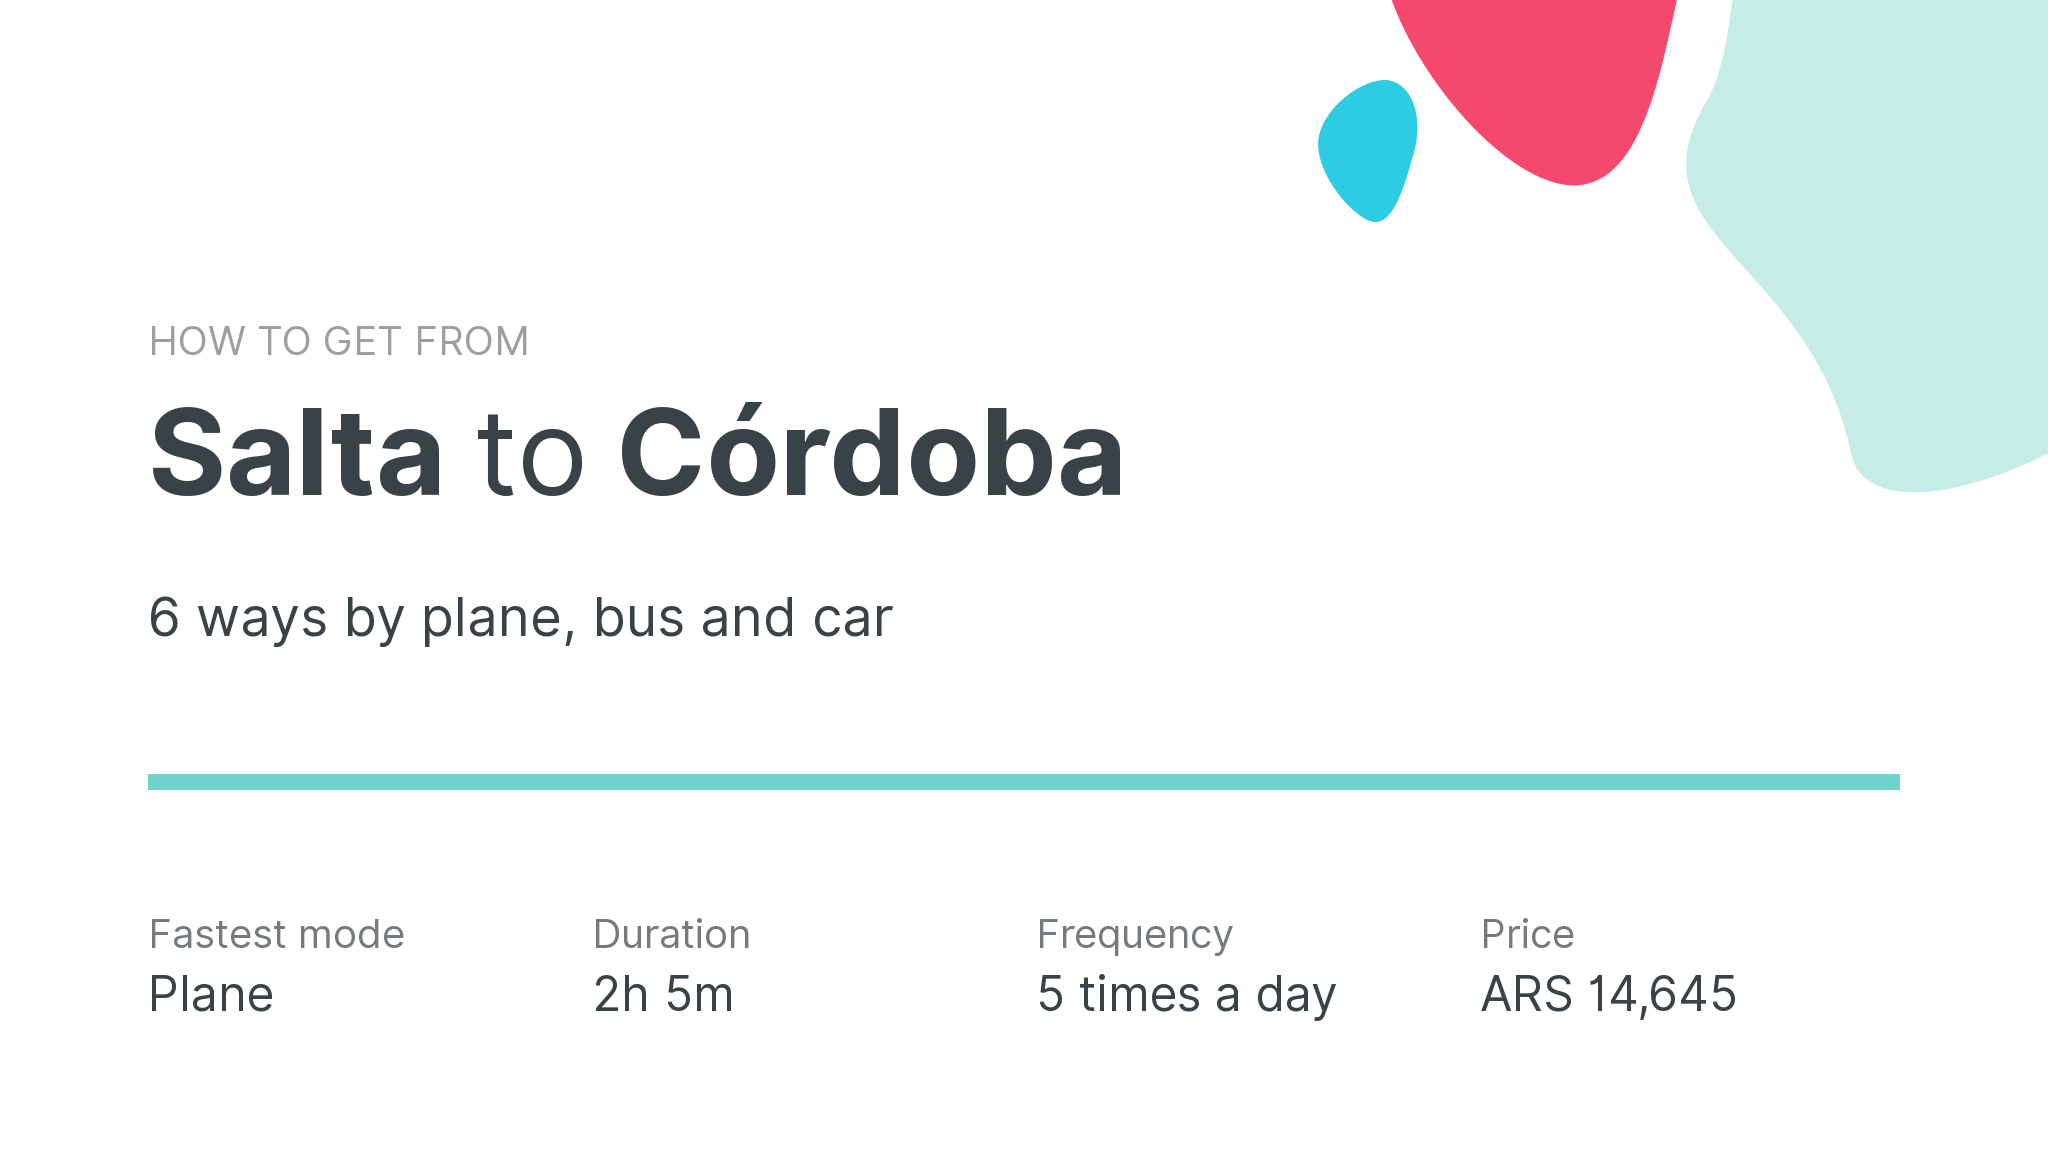 How do I get from Salta to Córdoba